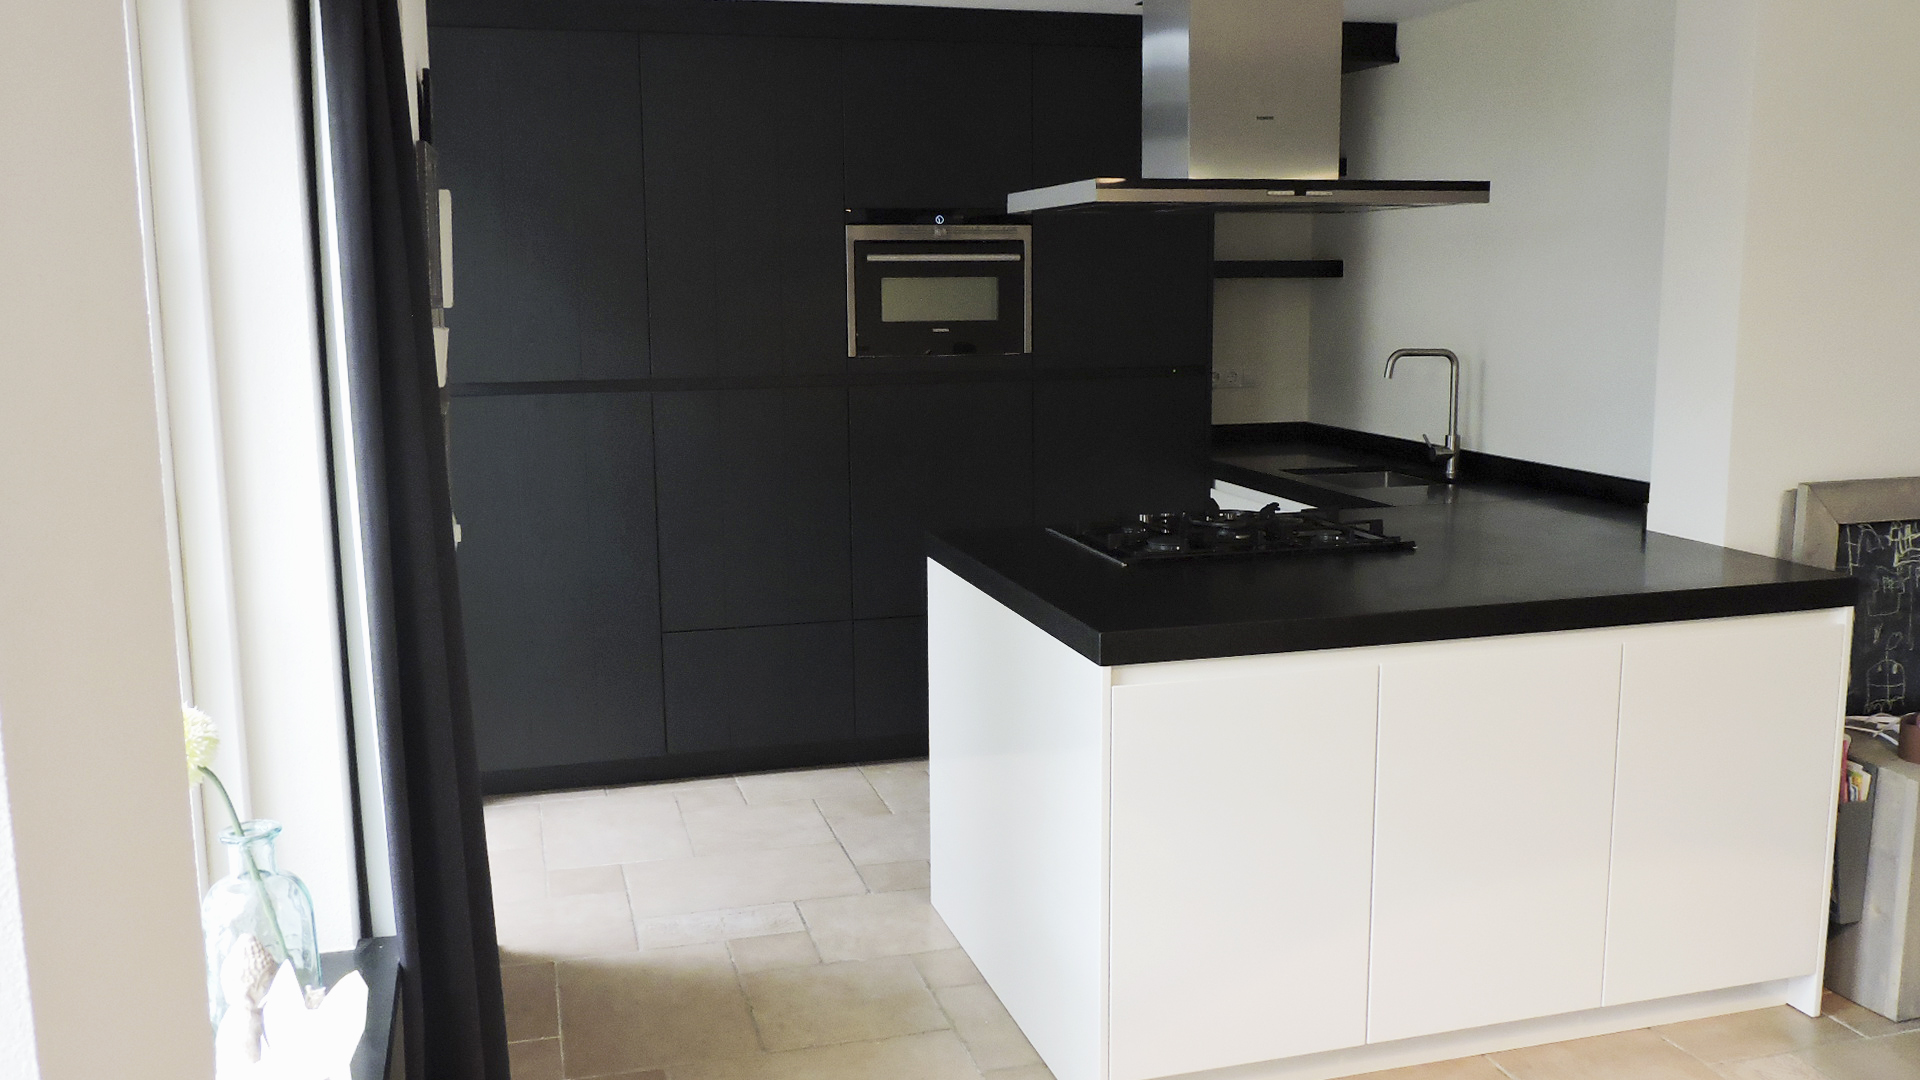 Ongebruikt Moderne greeploze keuken donkergrijs met wit | Van Doren YW-84